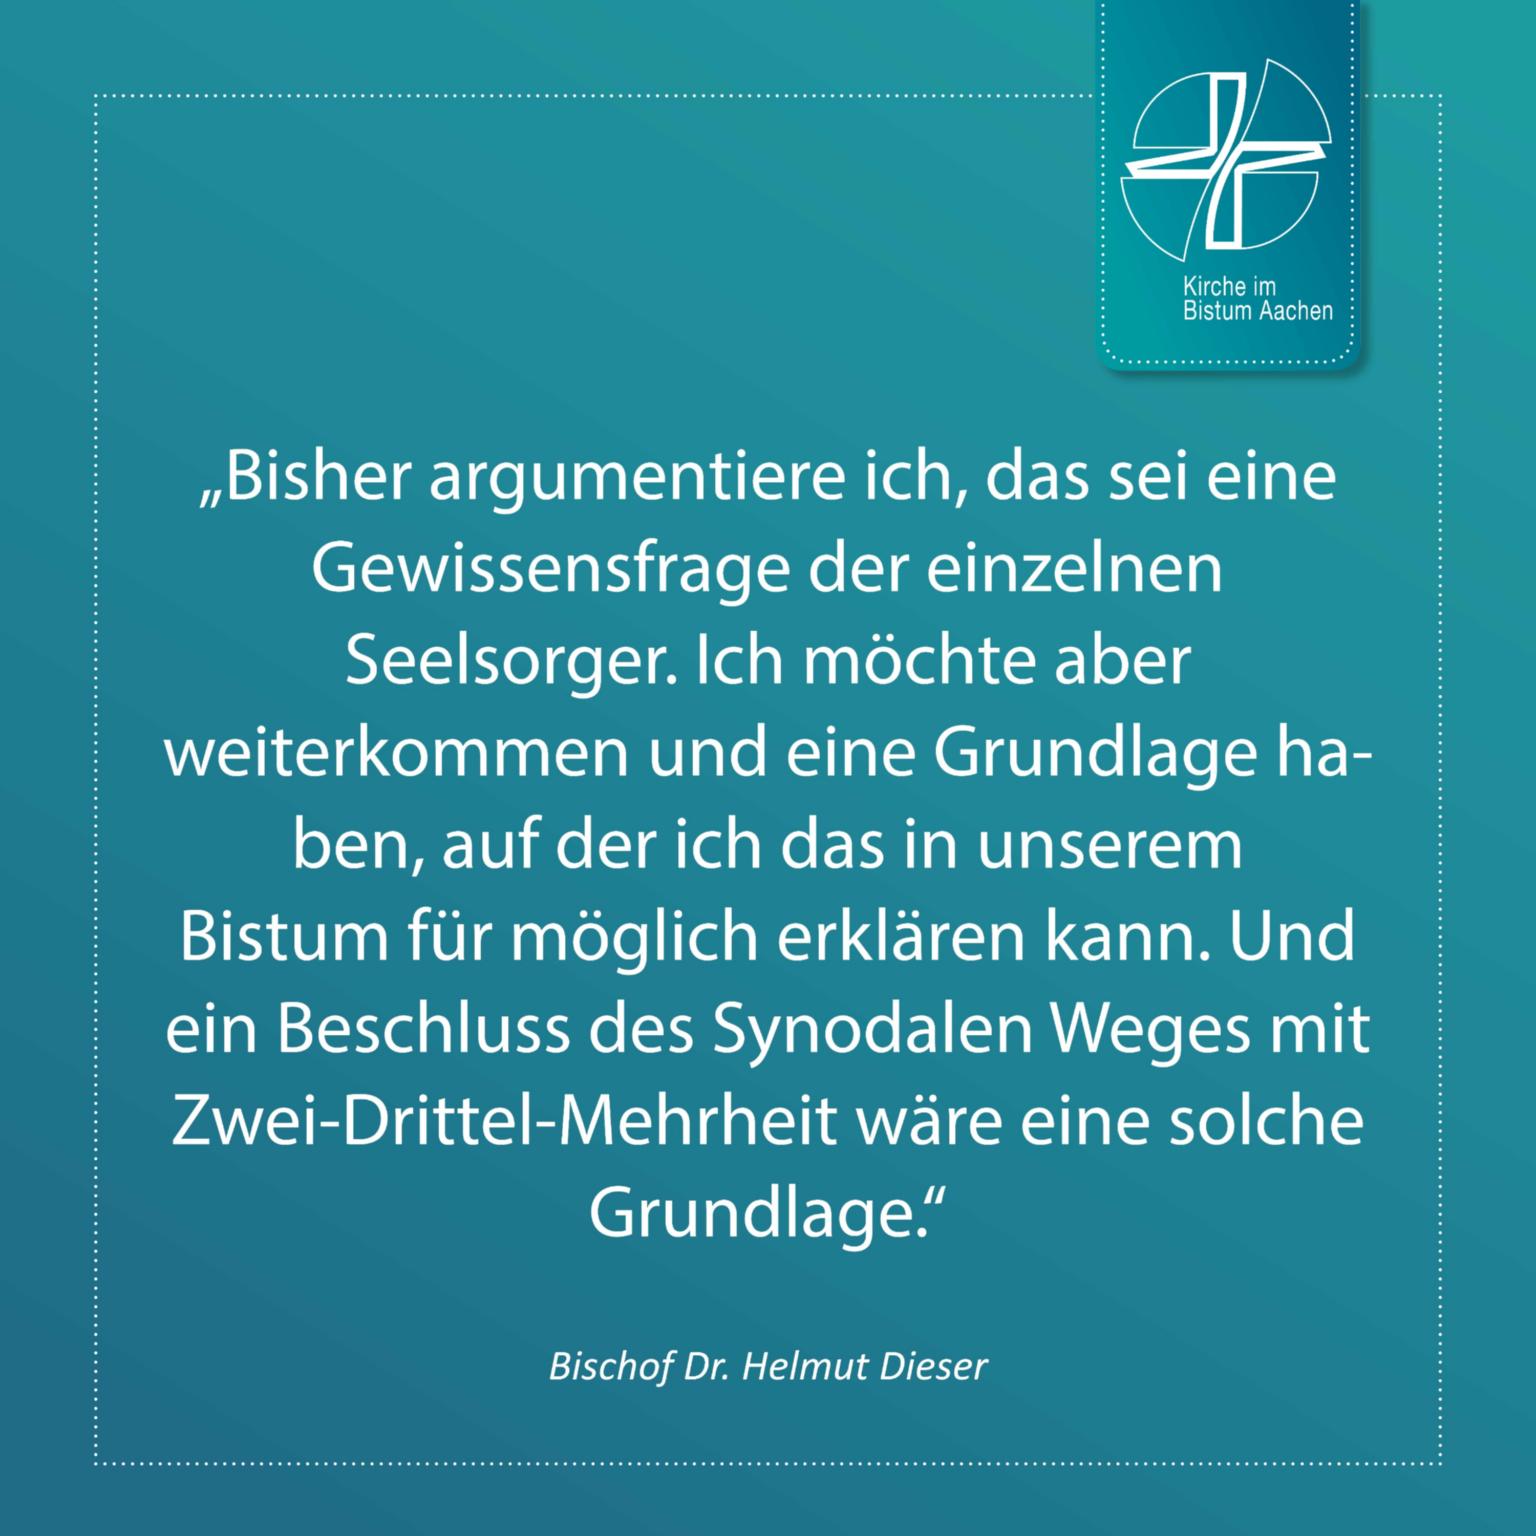 Bischof Dr. Helmut Dieser - Zitat 13 (c) Bistum Aachen